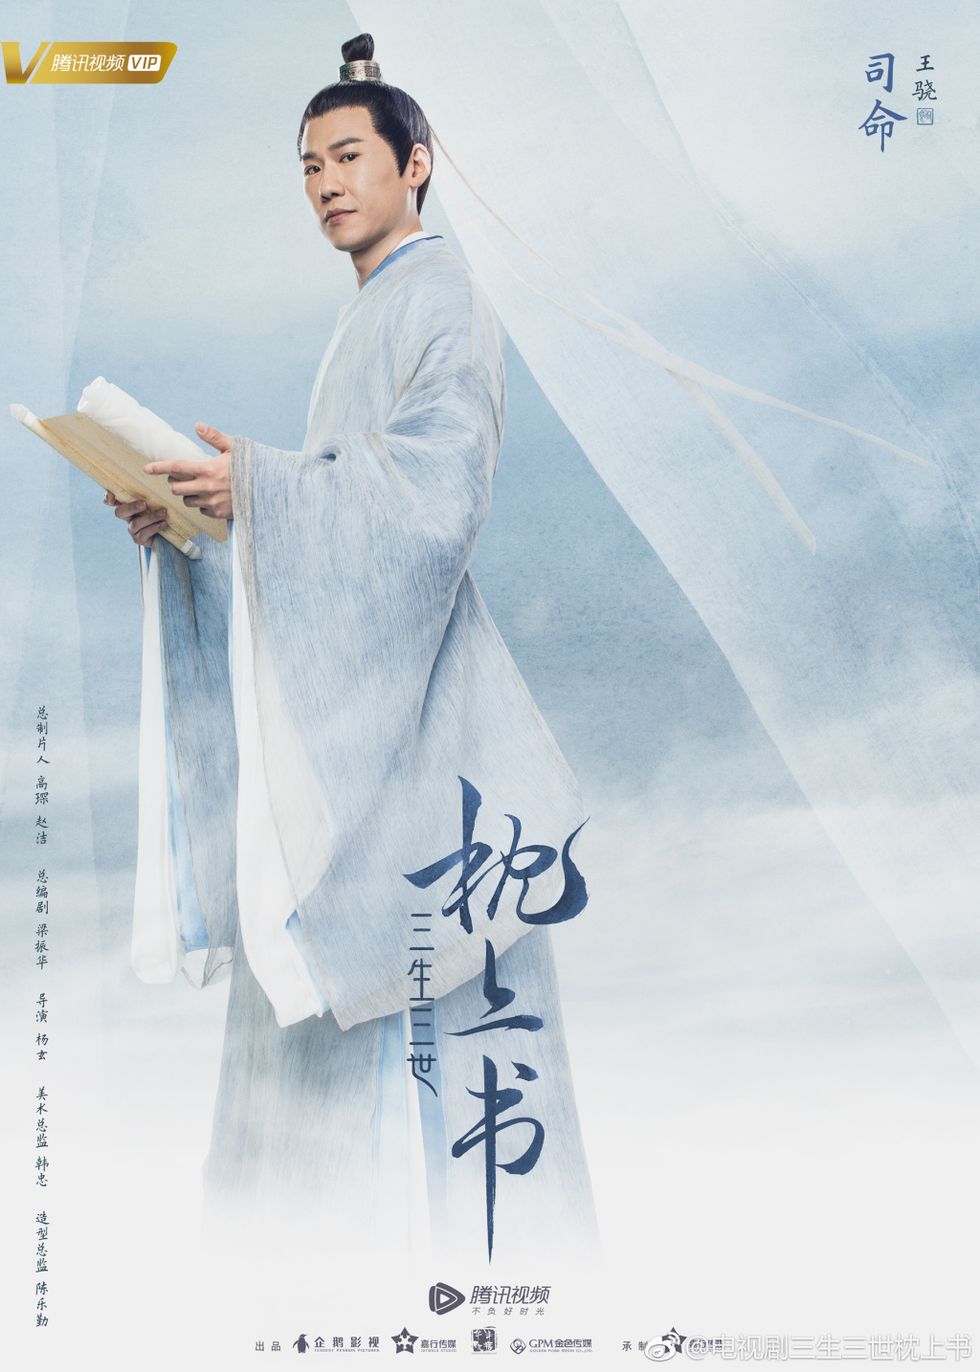 Poster, T'ai chi ch'uan, Xing yi quan, Wing chun, Kung fu, Baguazhang, 